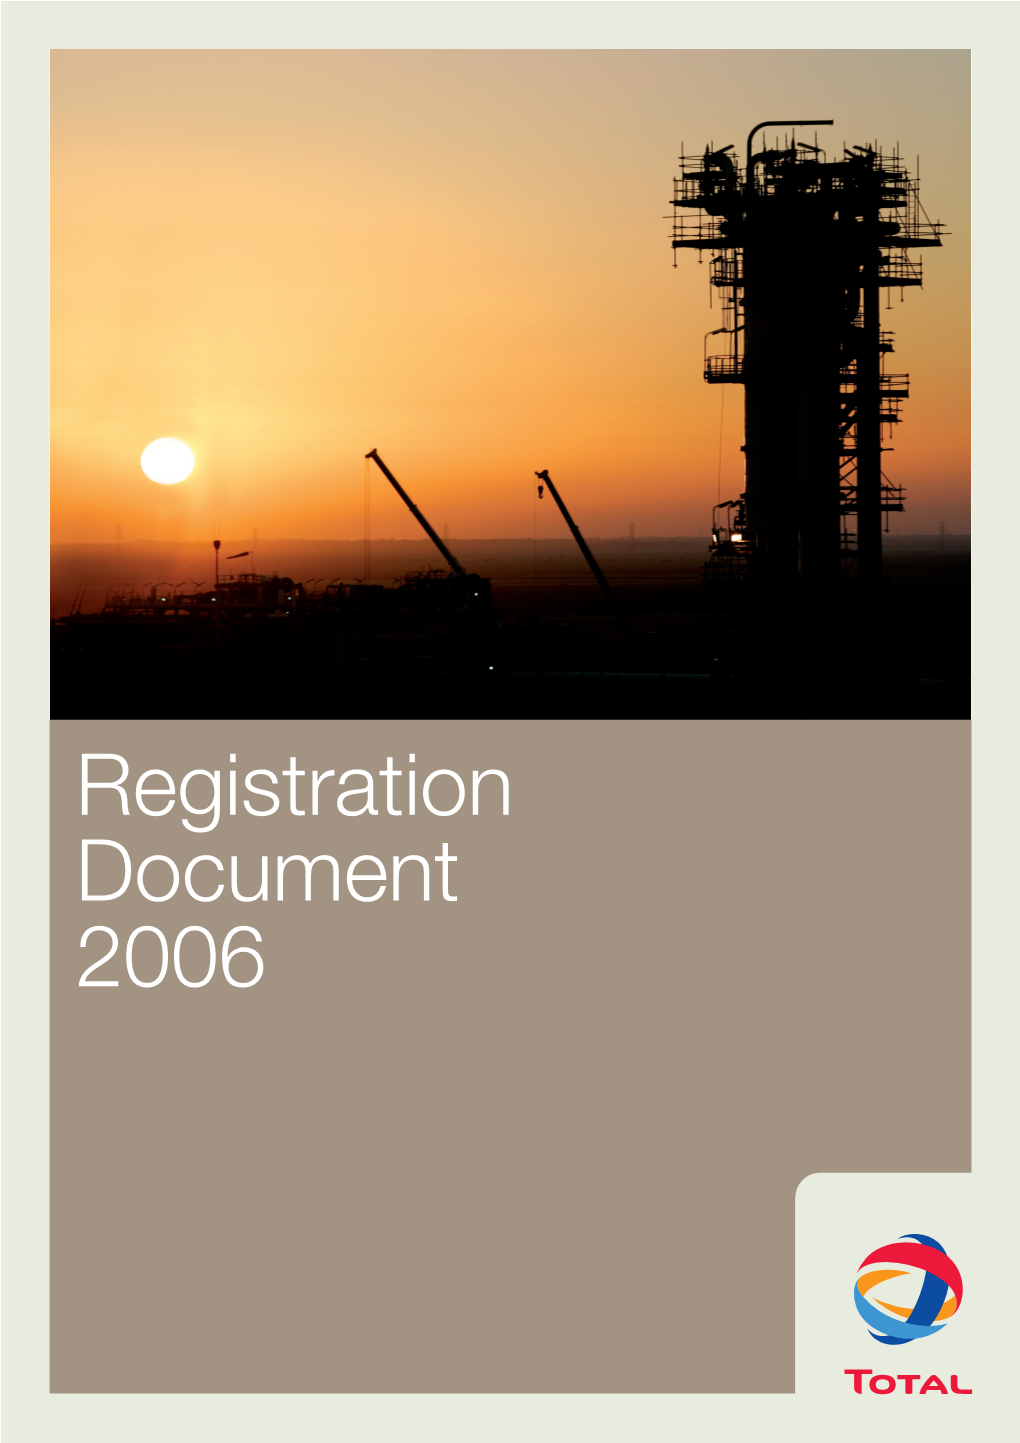 Registration Document 2006 Contents